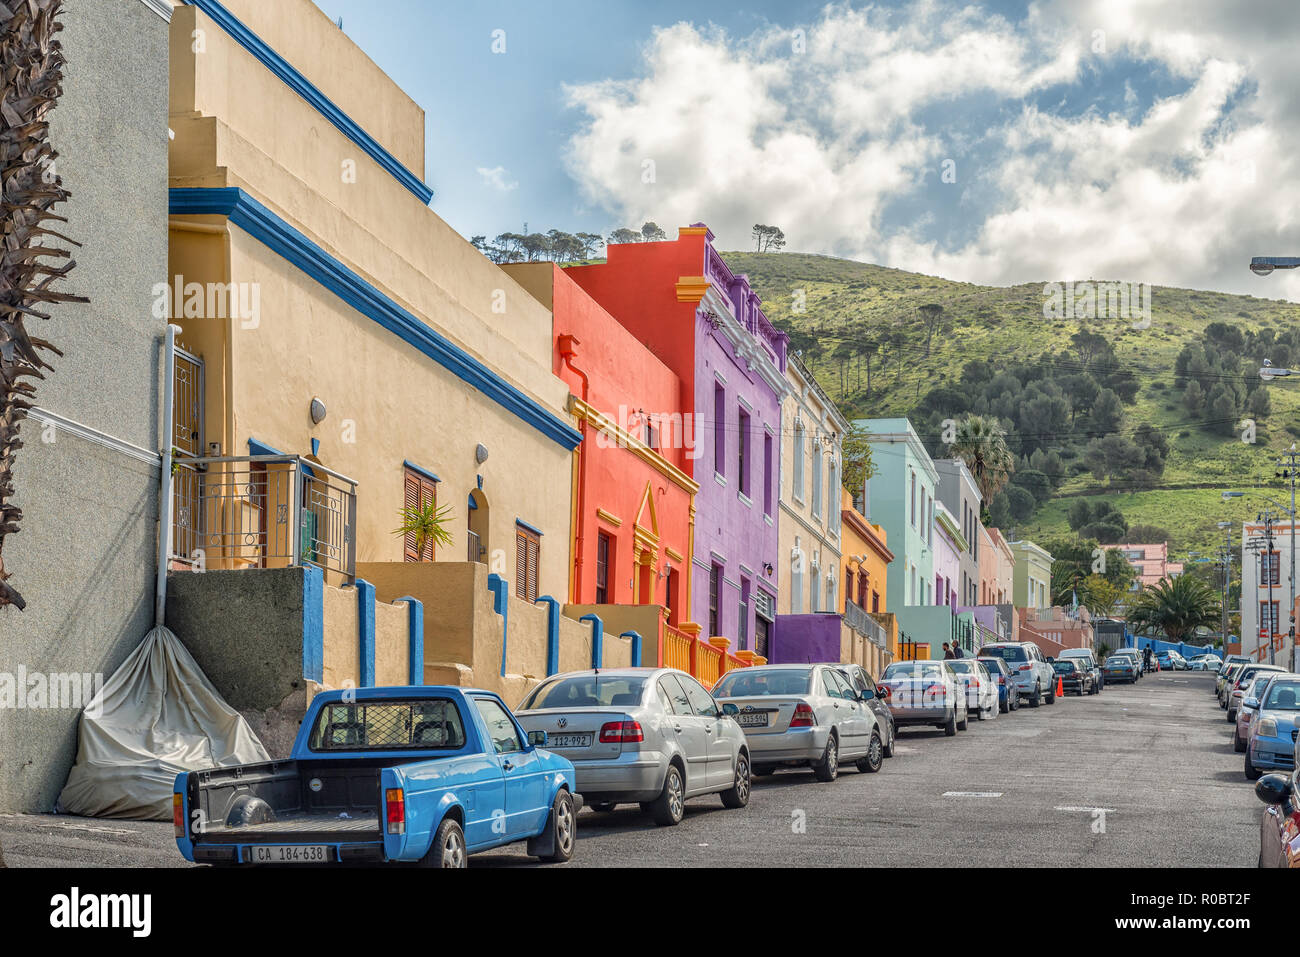 CAPE TOWN, AFRIQUE DU SUD, le 17 août 2018 : une scène de rue, avec multi-couleur des maisons et des véhicules, dans le Bo-Kaap au Cap de l'ouest du cap Prov Banque D'Images